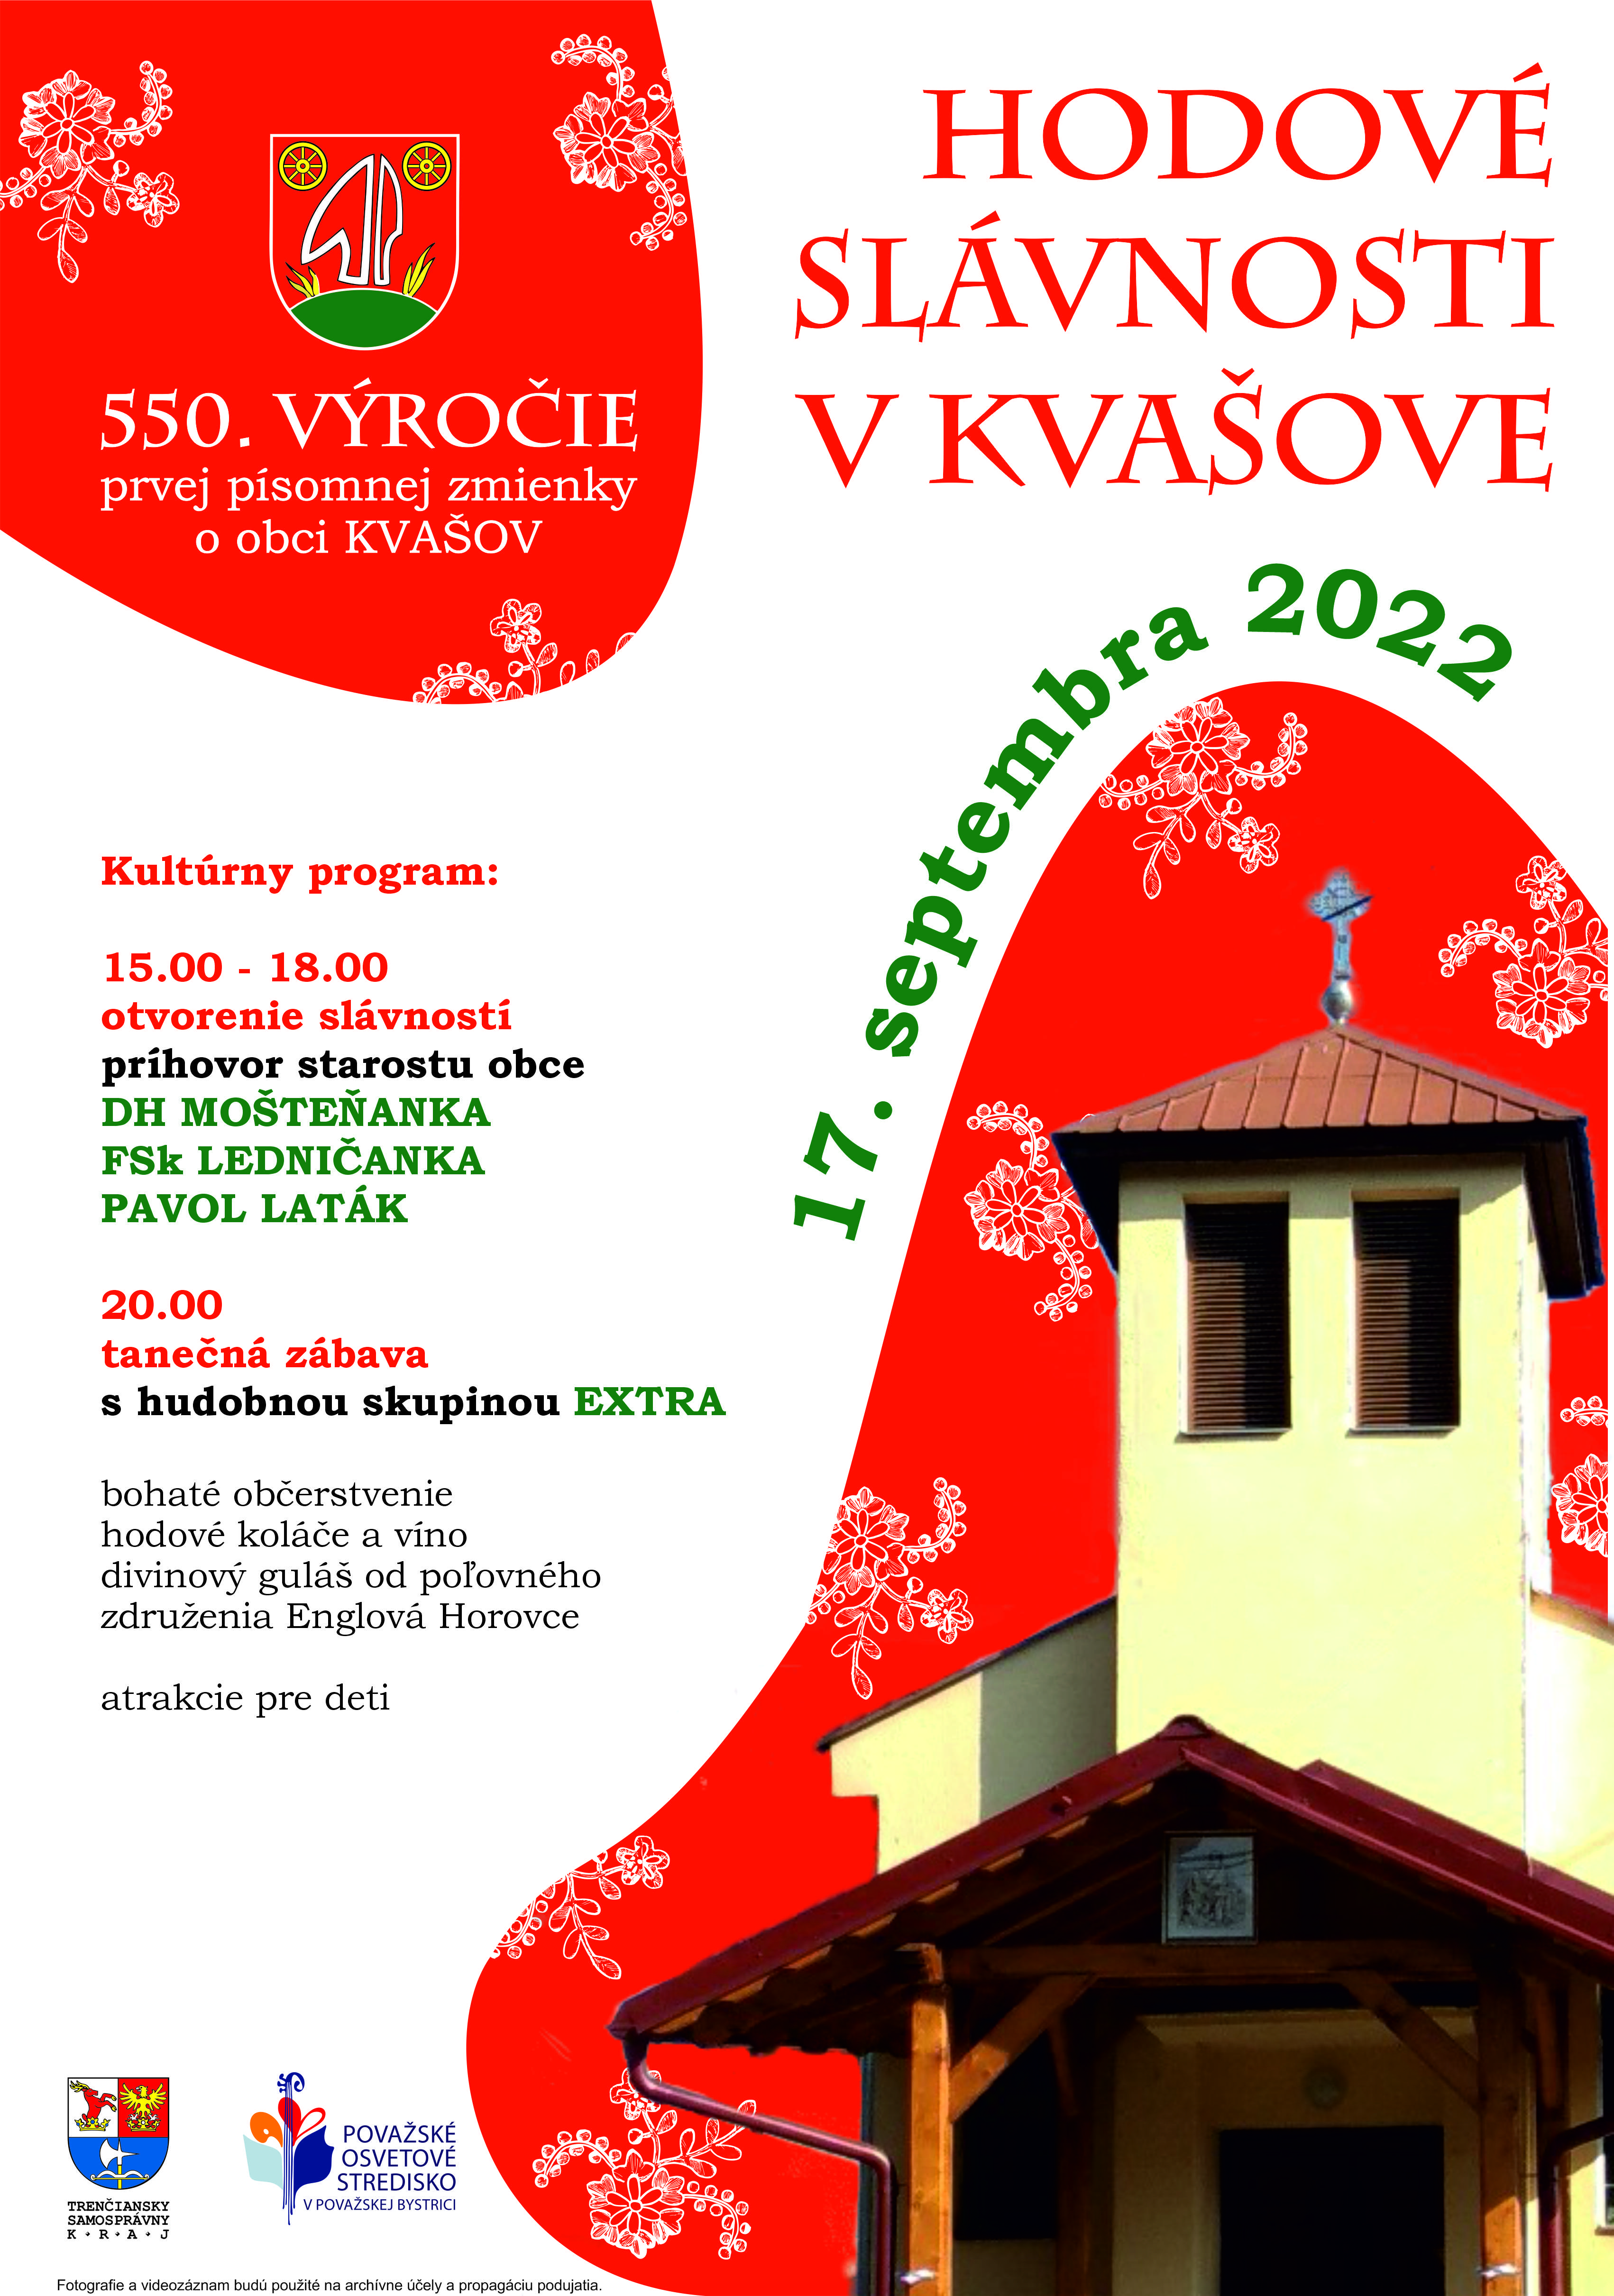 Hodové slávnosti v Kvašove 2022 - oslavy 550. výročia prvej písomnej zmienky o obci